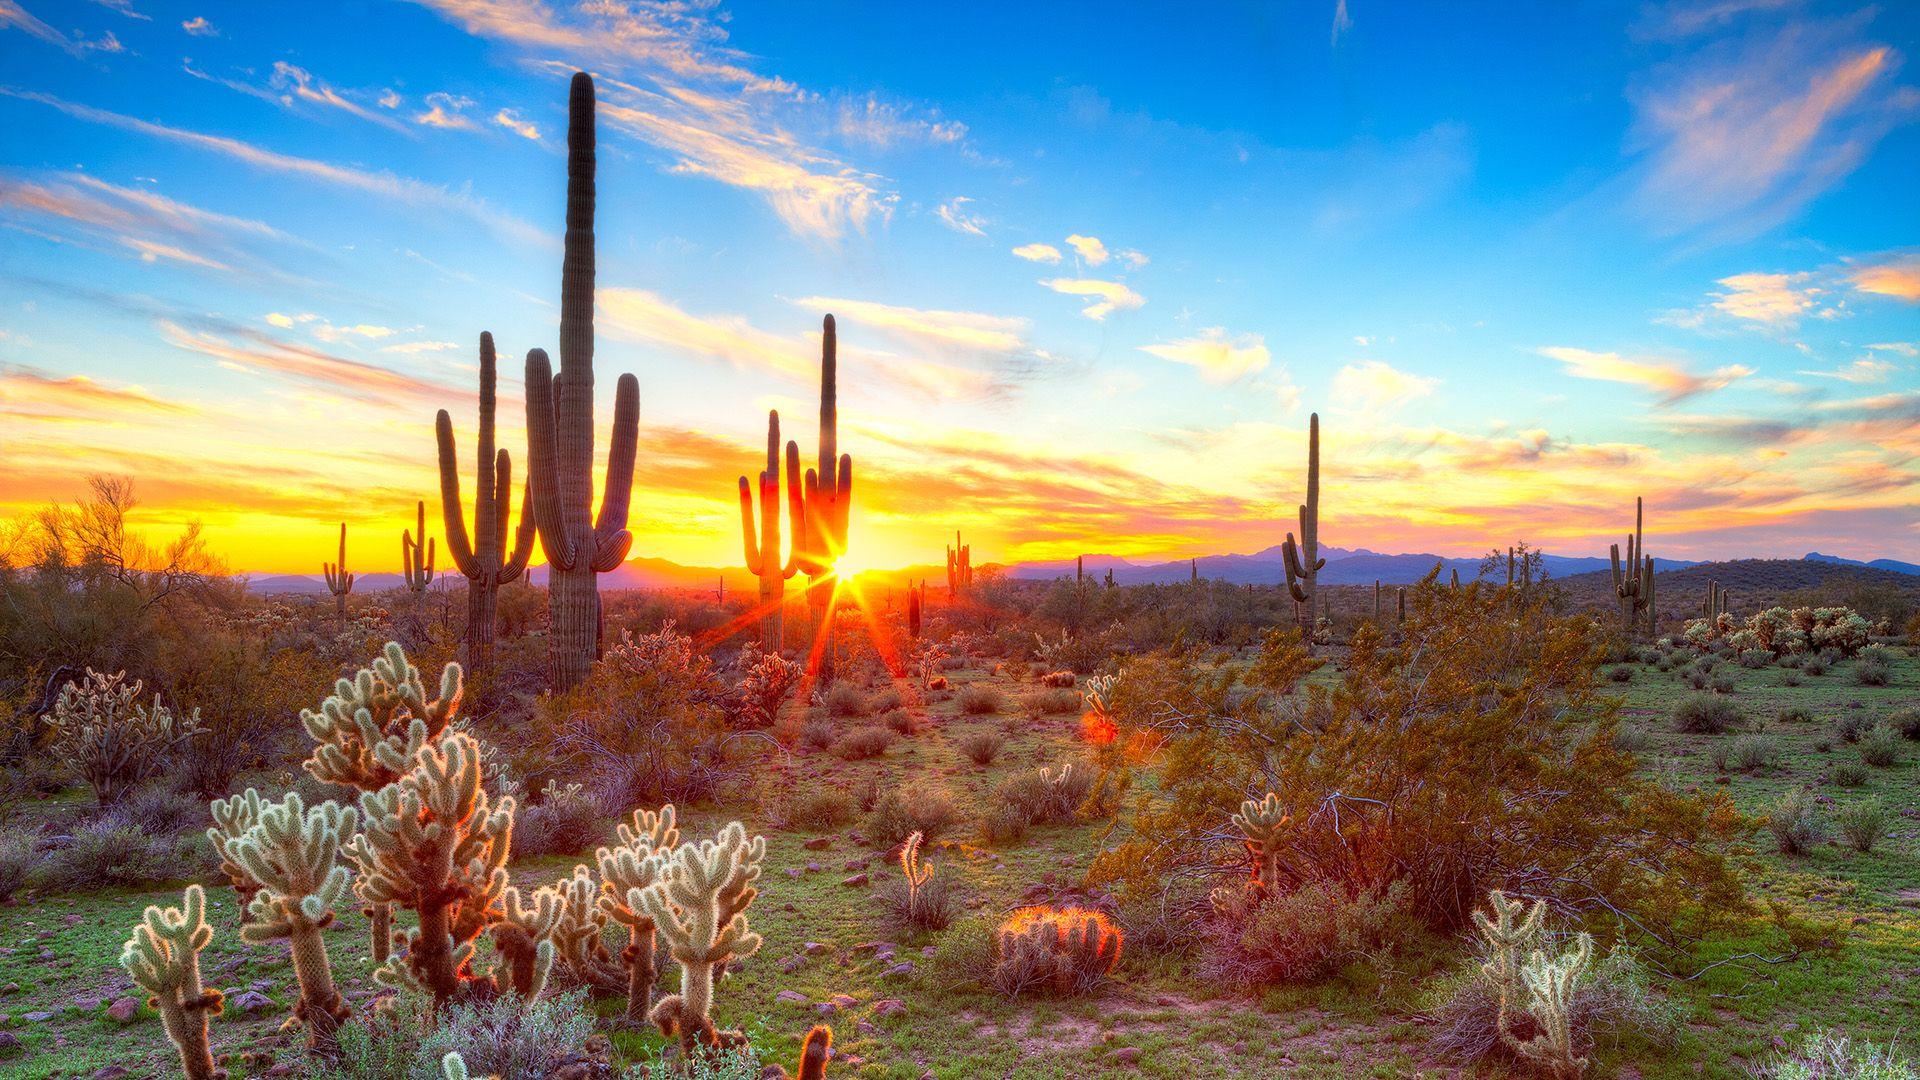 Sonoran Desert Wallpapers - Top Free Sonoran Desert Backgrounds ...